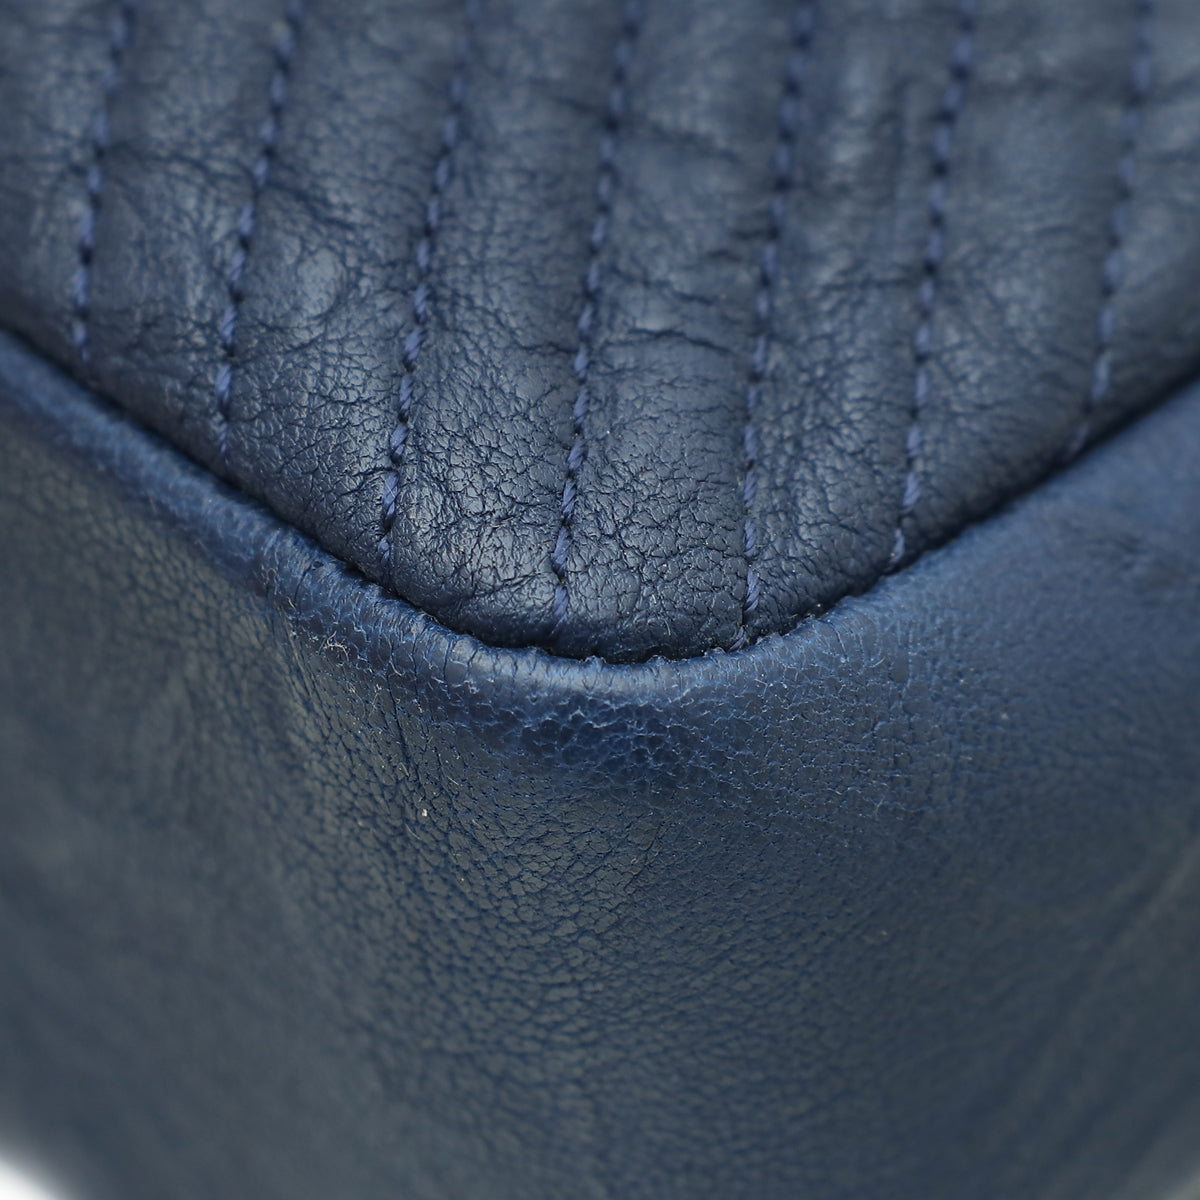 Chanel Blue Surpique Flap Medium Bag